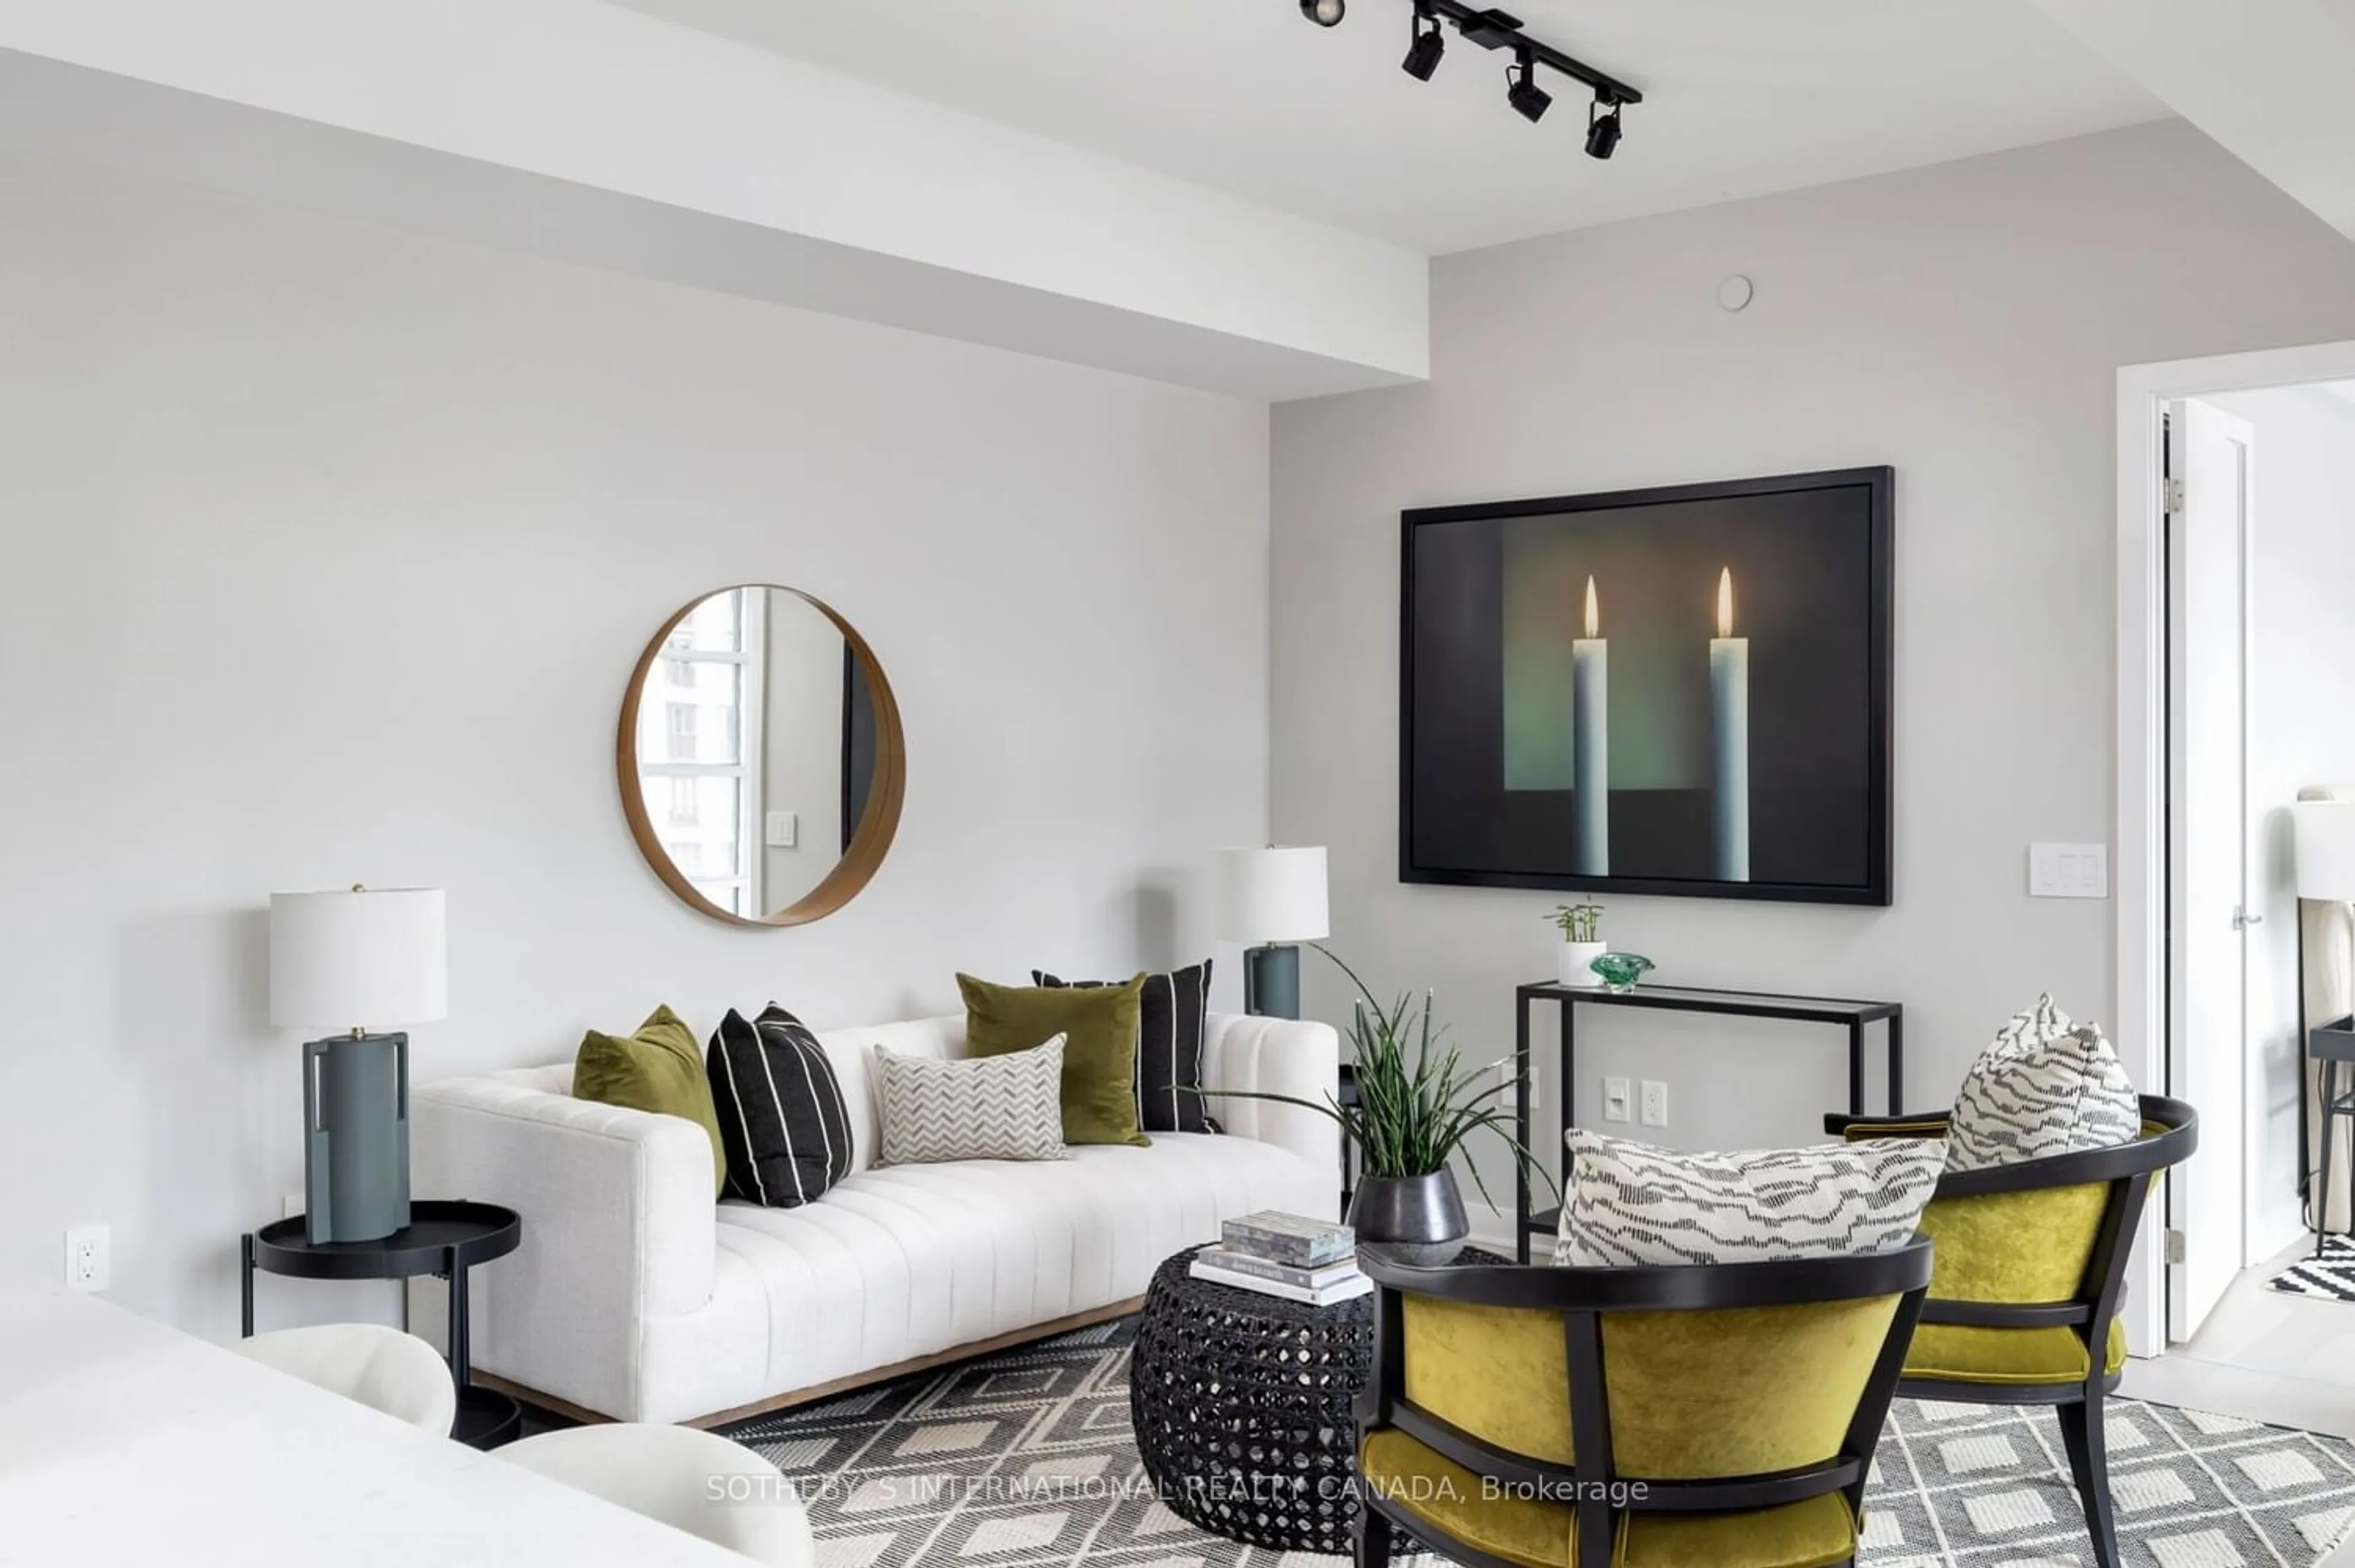 Living room for 501 Adelaide St #501, Toronto Ontario M5V 1T4